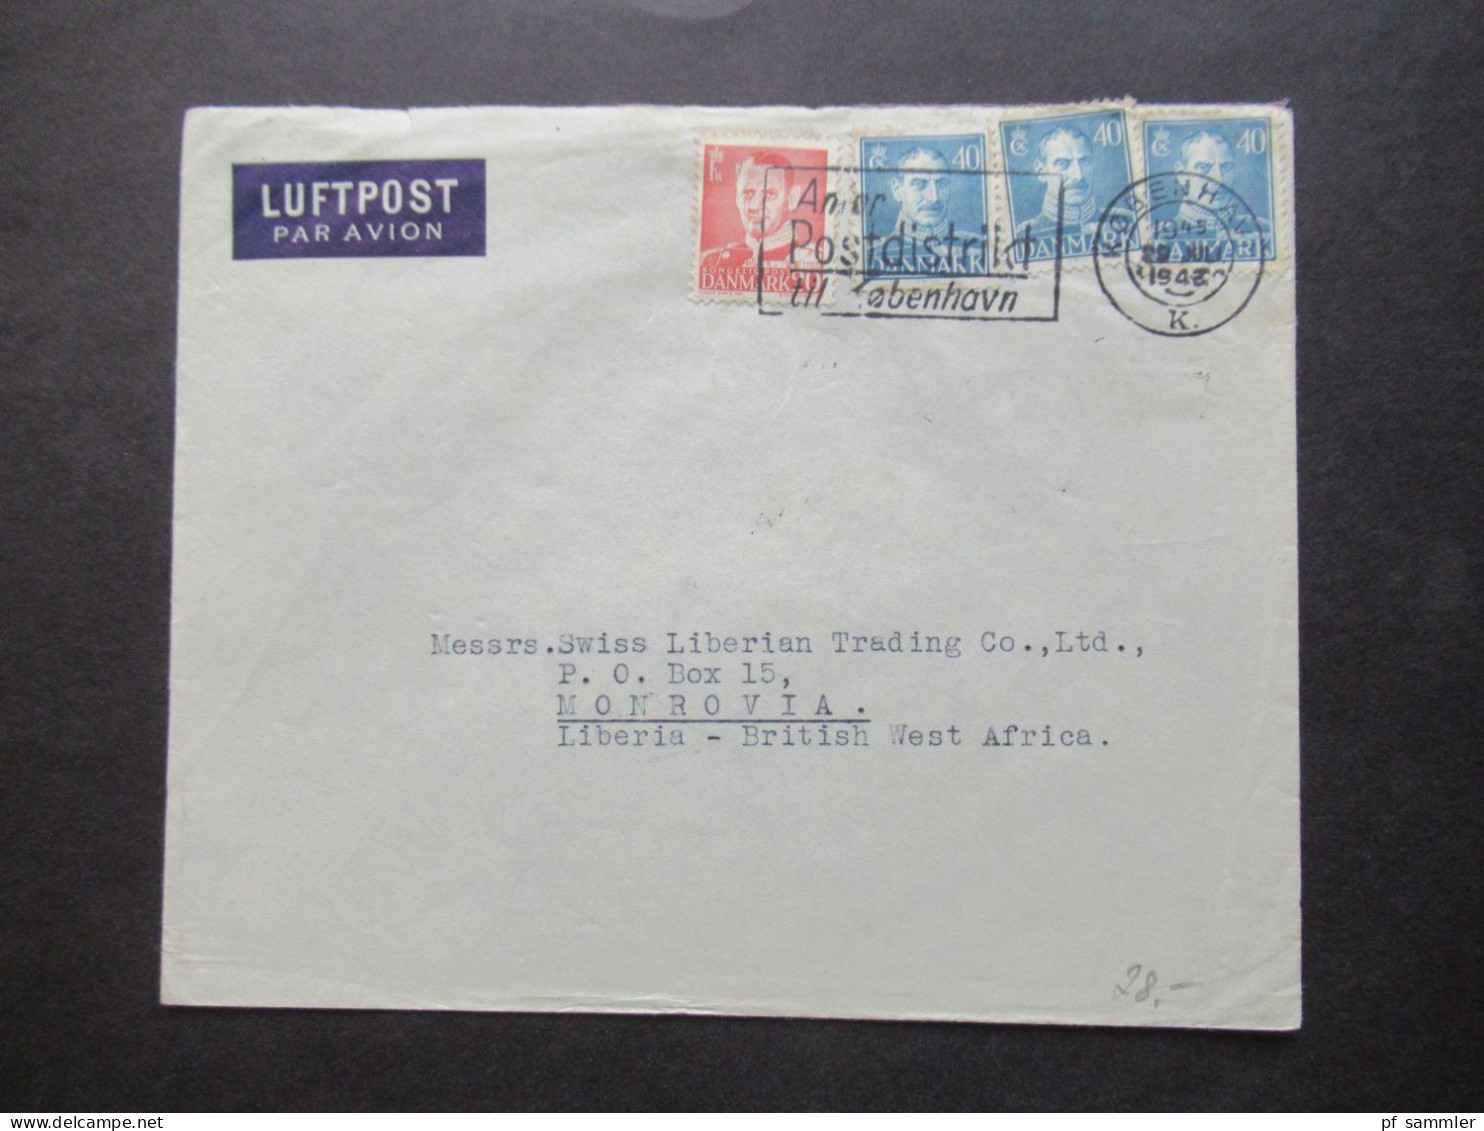 Dänemark 1948 MiF Mit Luftpost Nach Monrovia Liberia British West Africa Mit Ank. Stempel / Schöne Destination! - Covers & Documents